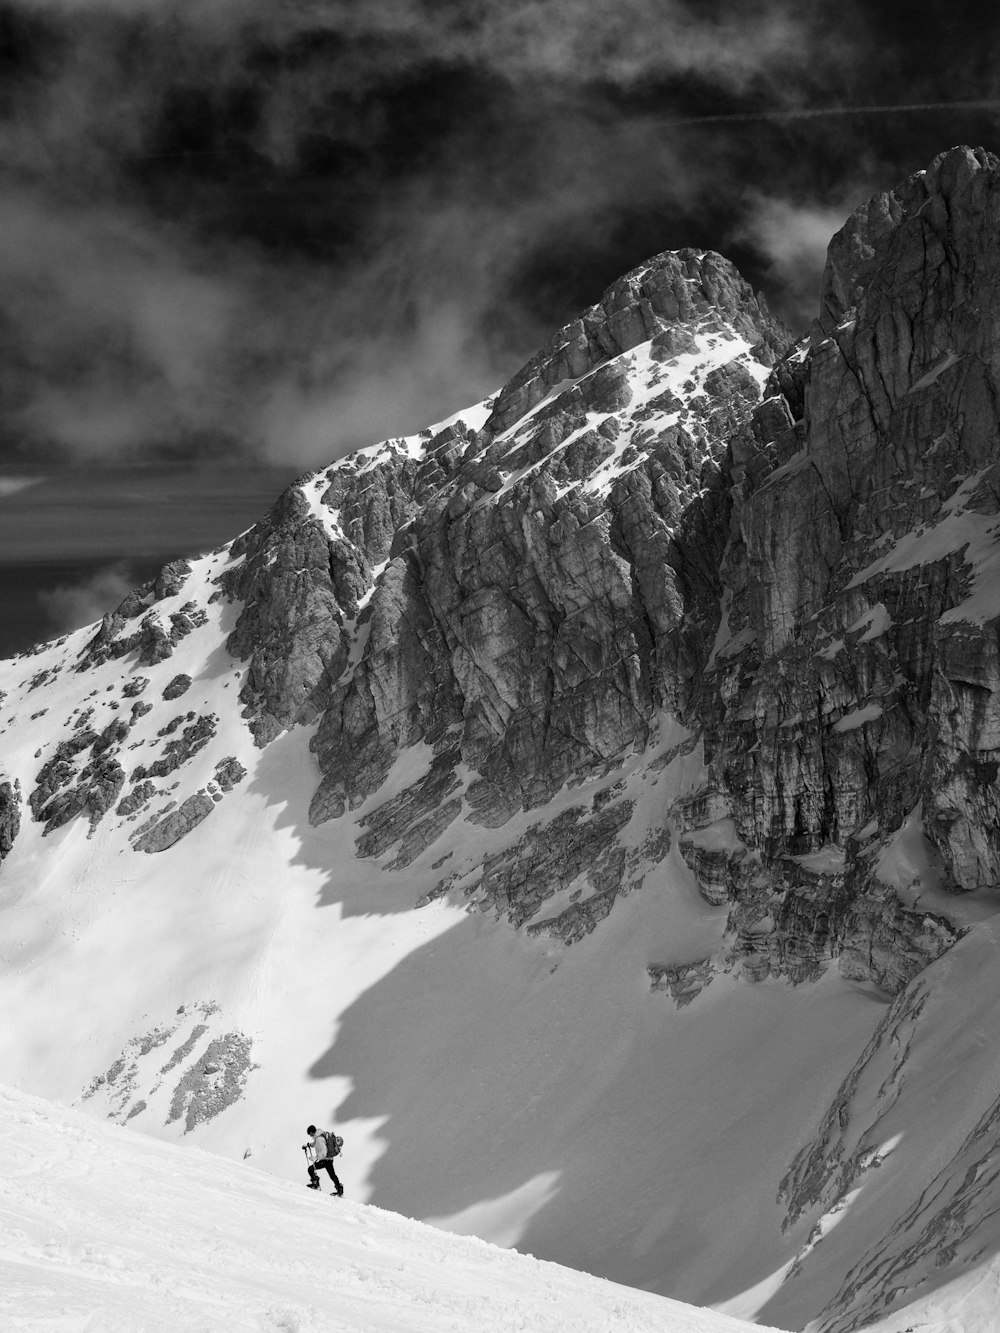 Photographie en niveaux de gris de la montagne